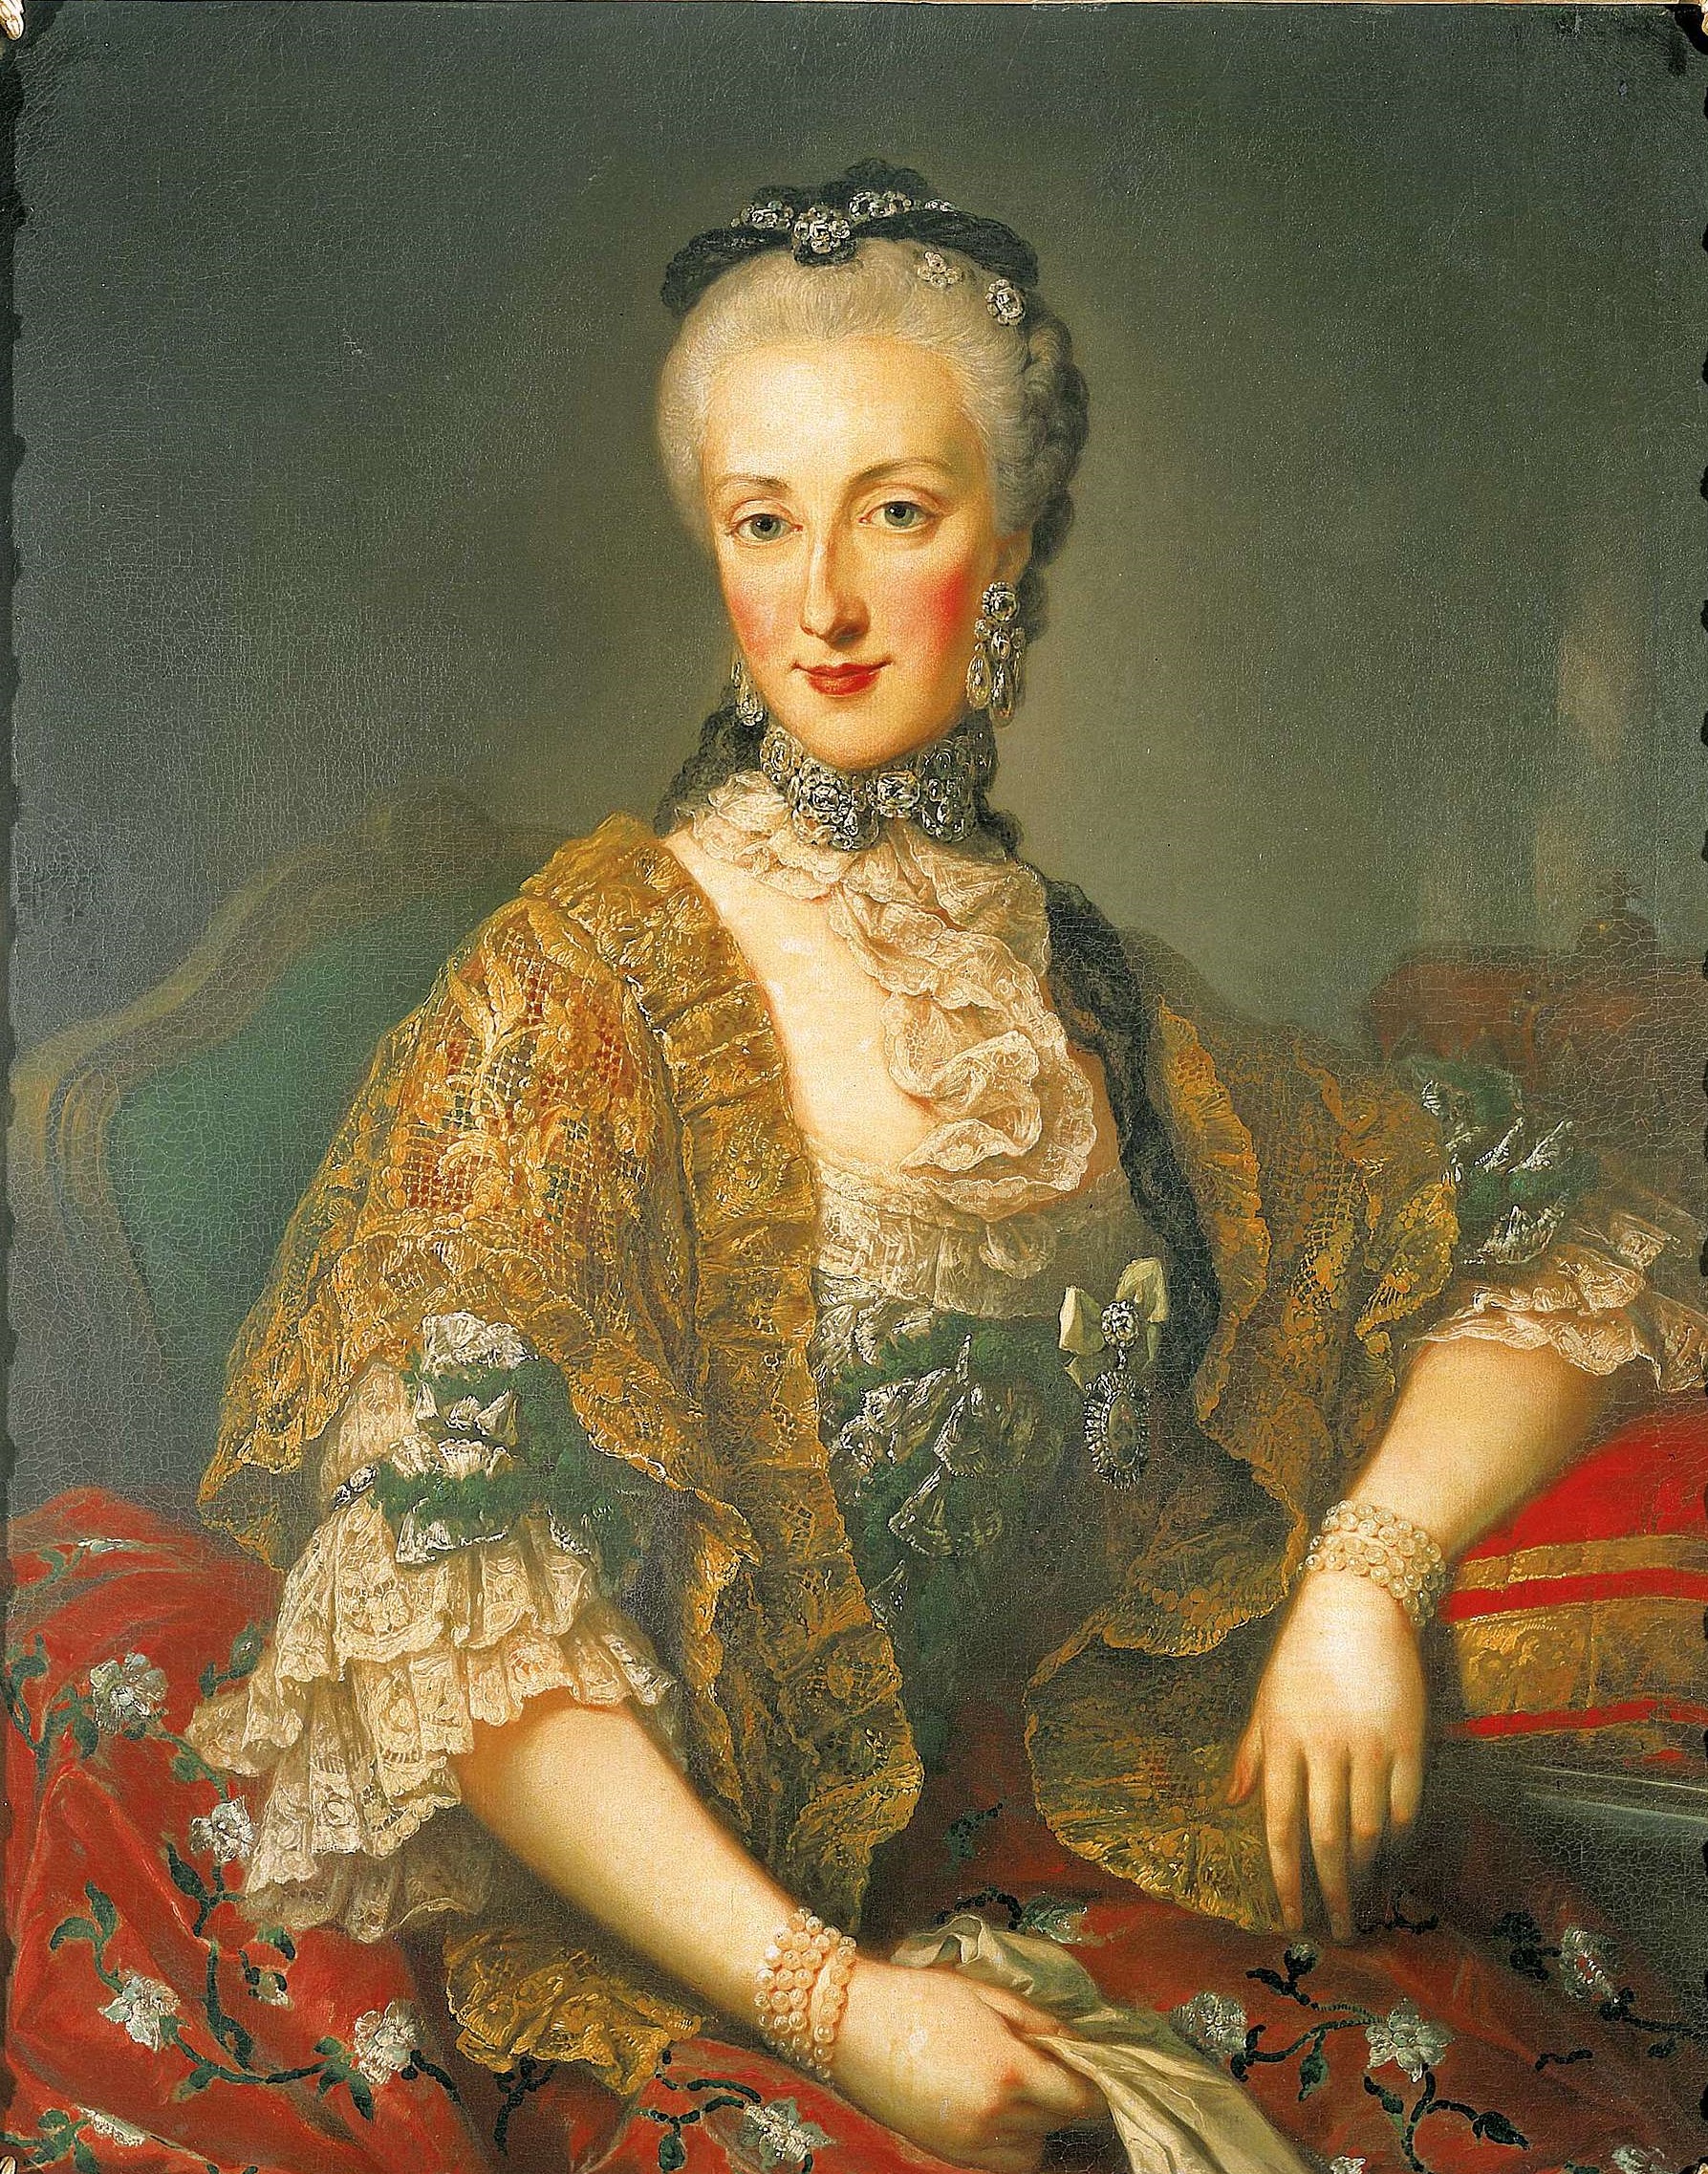 マリア・アンナ・フォン・エスターライヒ (1738-1789) - Wikipedia